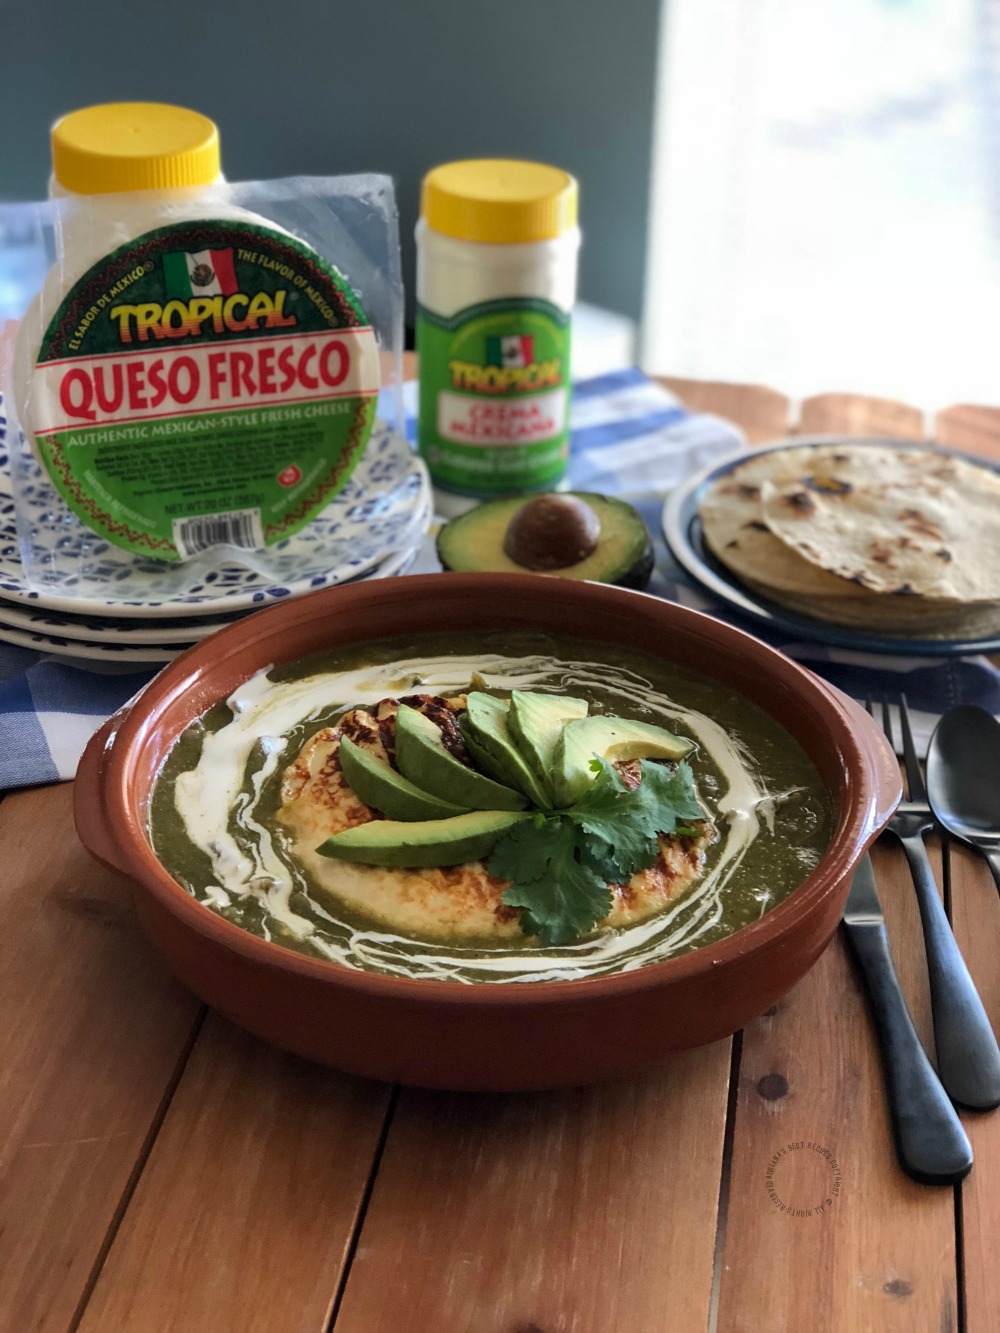 Nos encanta Tropical Queso Fresco Mexicano. El ingrediente principal para el queso fresco a la parrilla